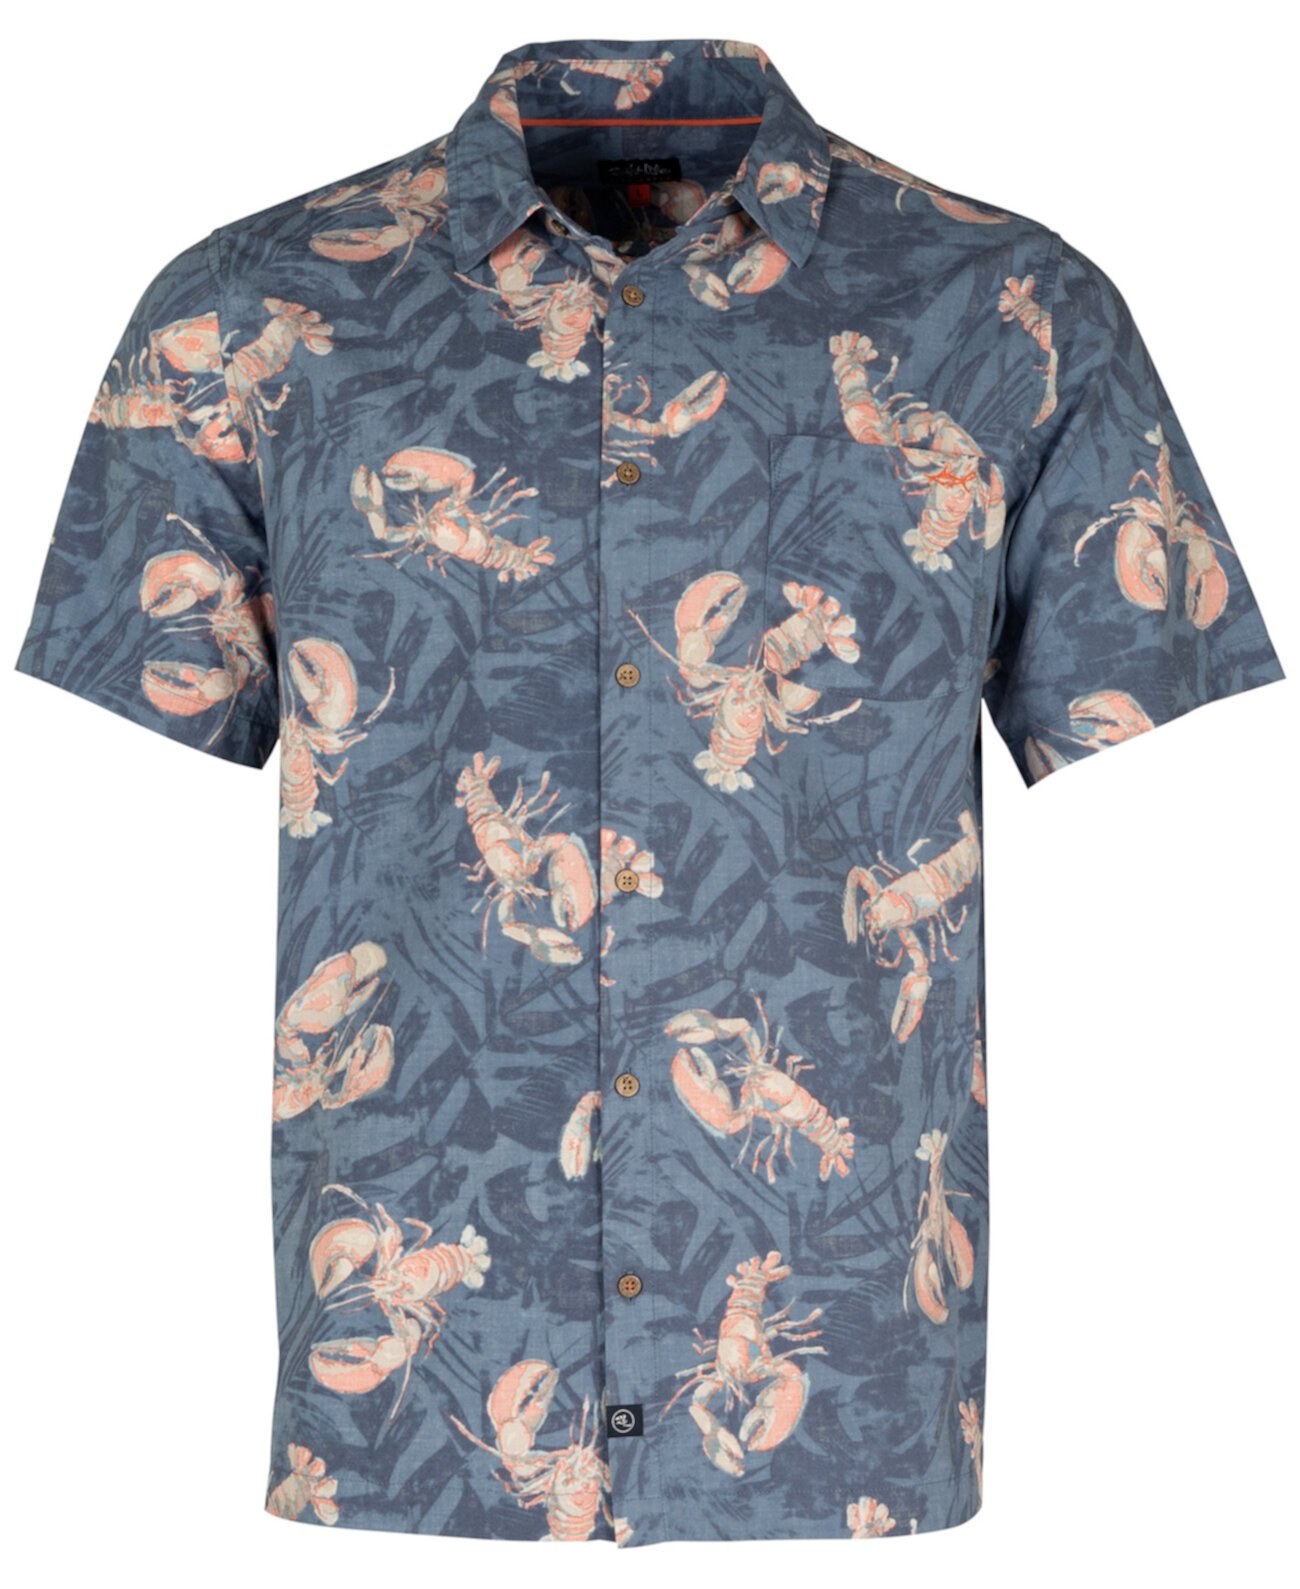 Men's Rock Lobster Graphic Print Short-Sleeve Button-Up Shirt Salt Life